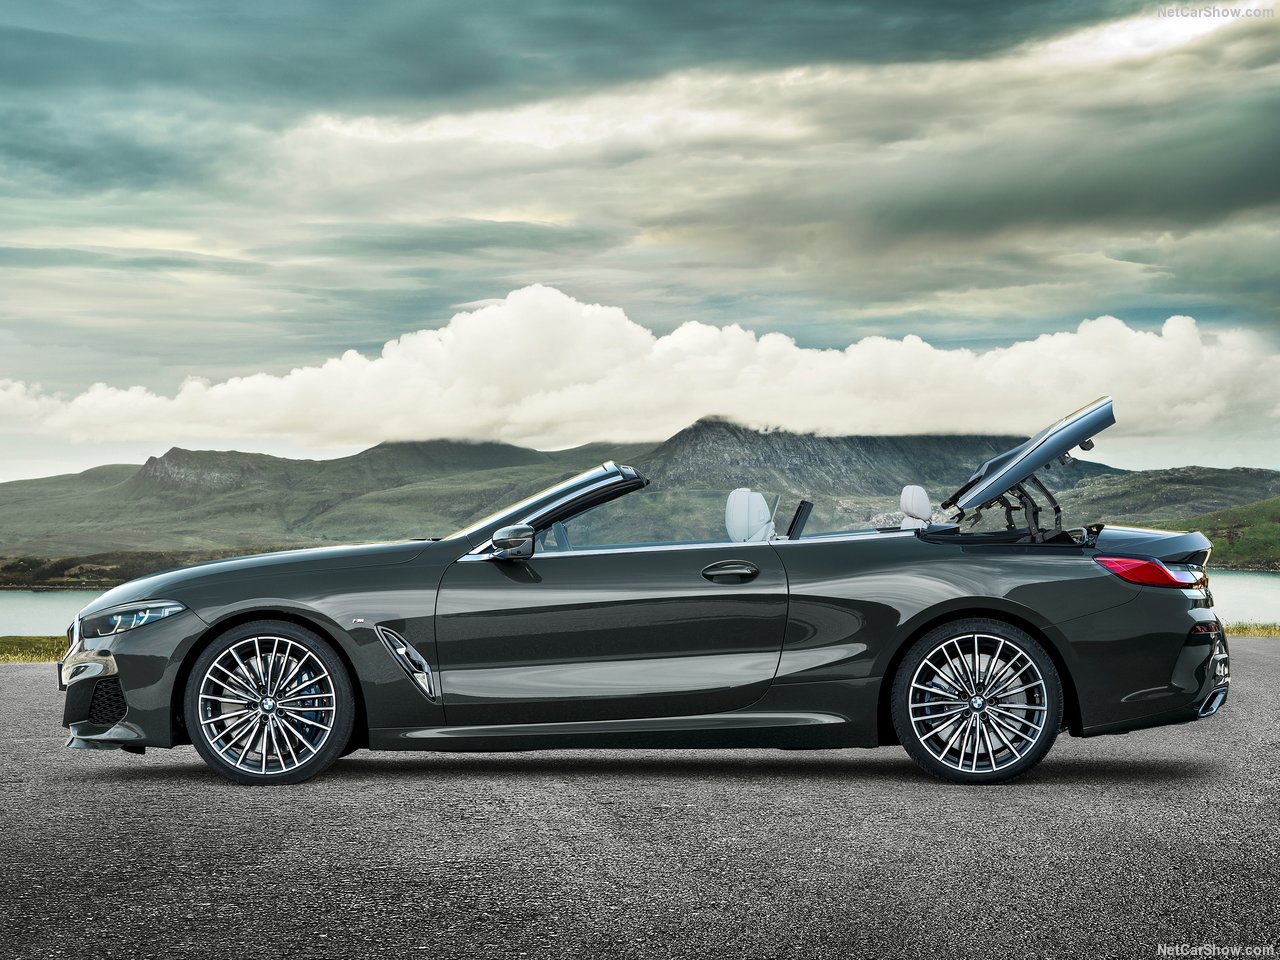 2019 BMW 8-Serisi Convertible tanıtıldı! İşte BMW 8-Serisi Convertible’ın özellikleri...